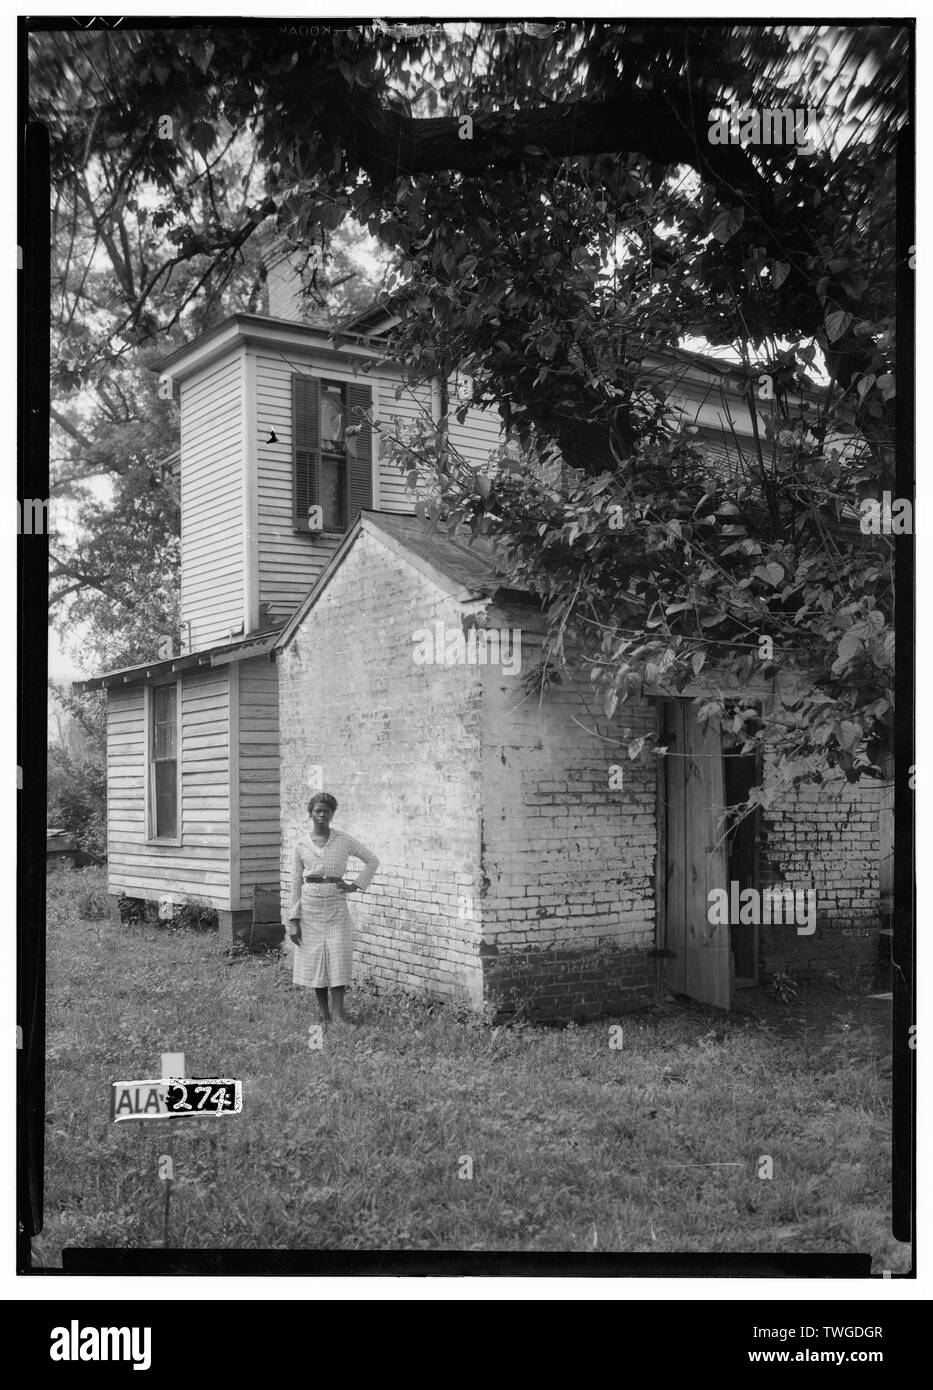 Les bâtiments historiques de l'enquête américaine Alex Bush, photographe, le 9 avril 1935 montrant l'ARRIÈRE DU LAIT EN BRIQUE, MAISON À N.W. - Shackelford-McCrary-Otts House, 901 Centreville Street, Greensboro, Hale Comté, AL Banque D'Images